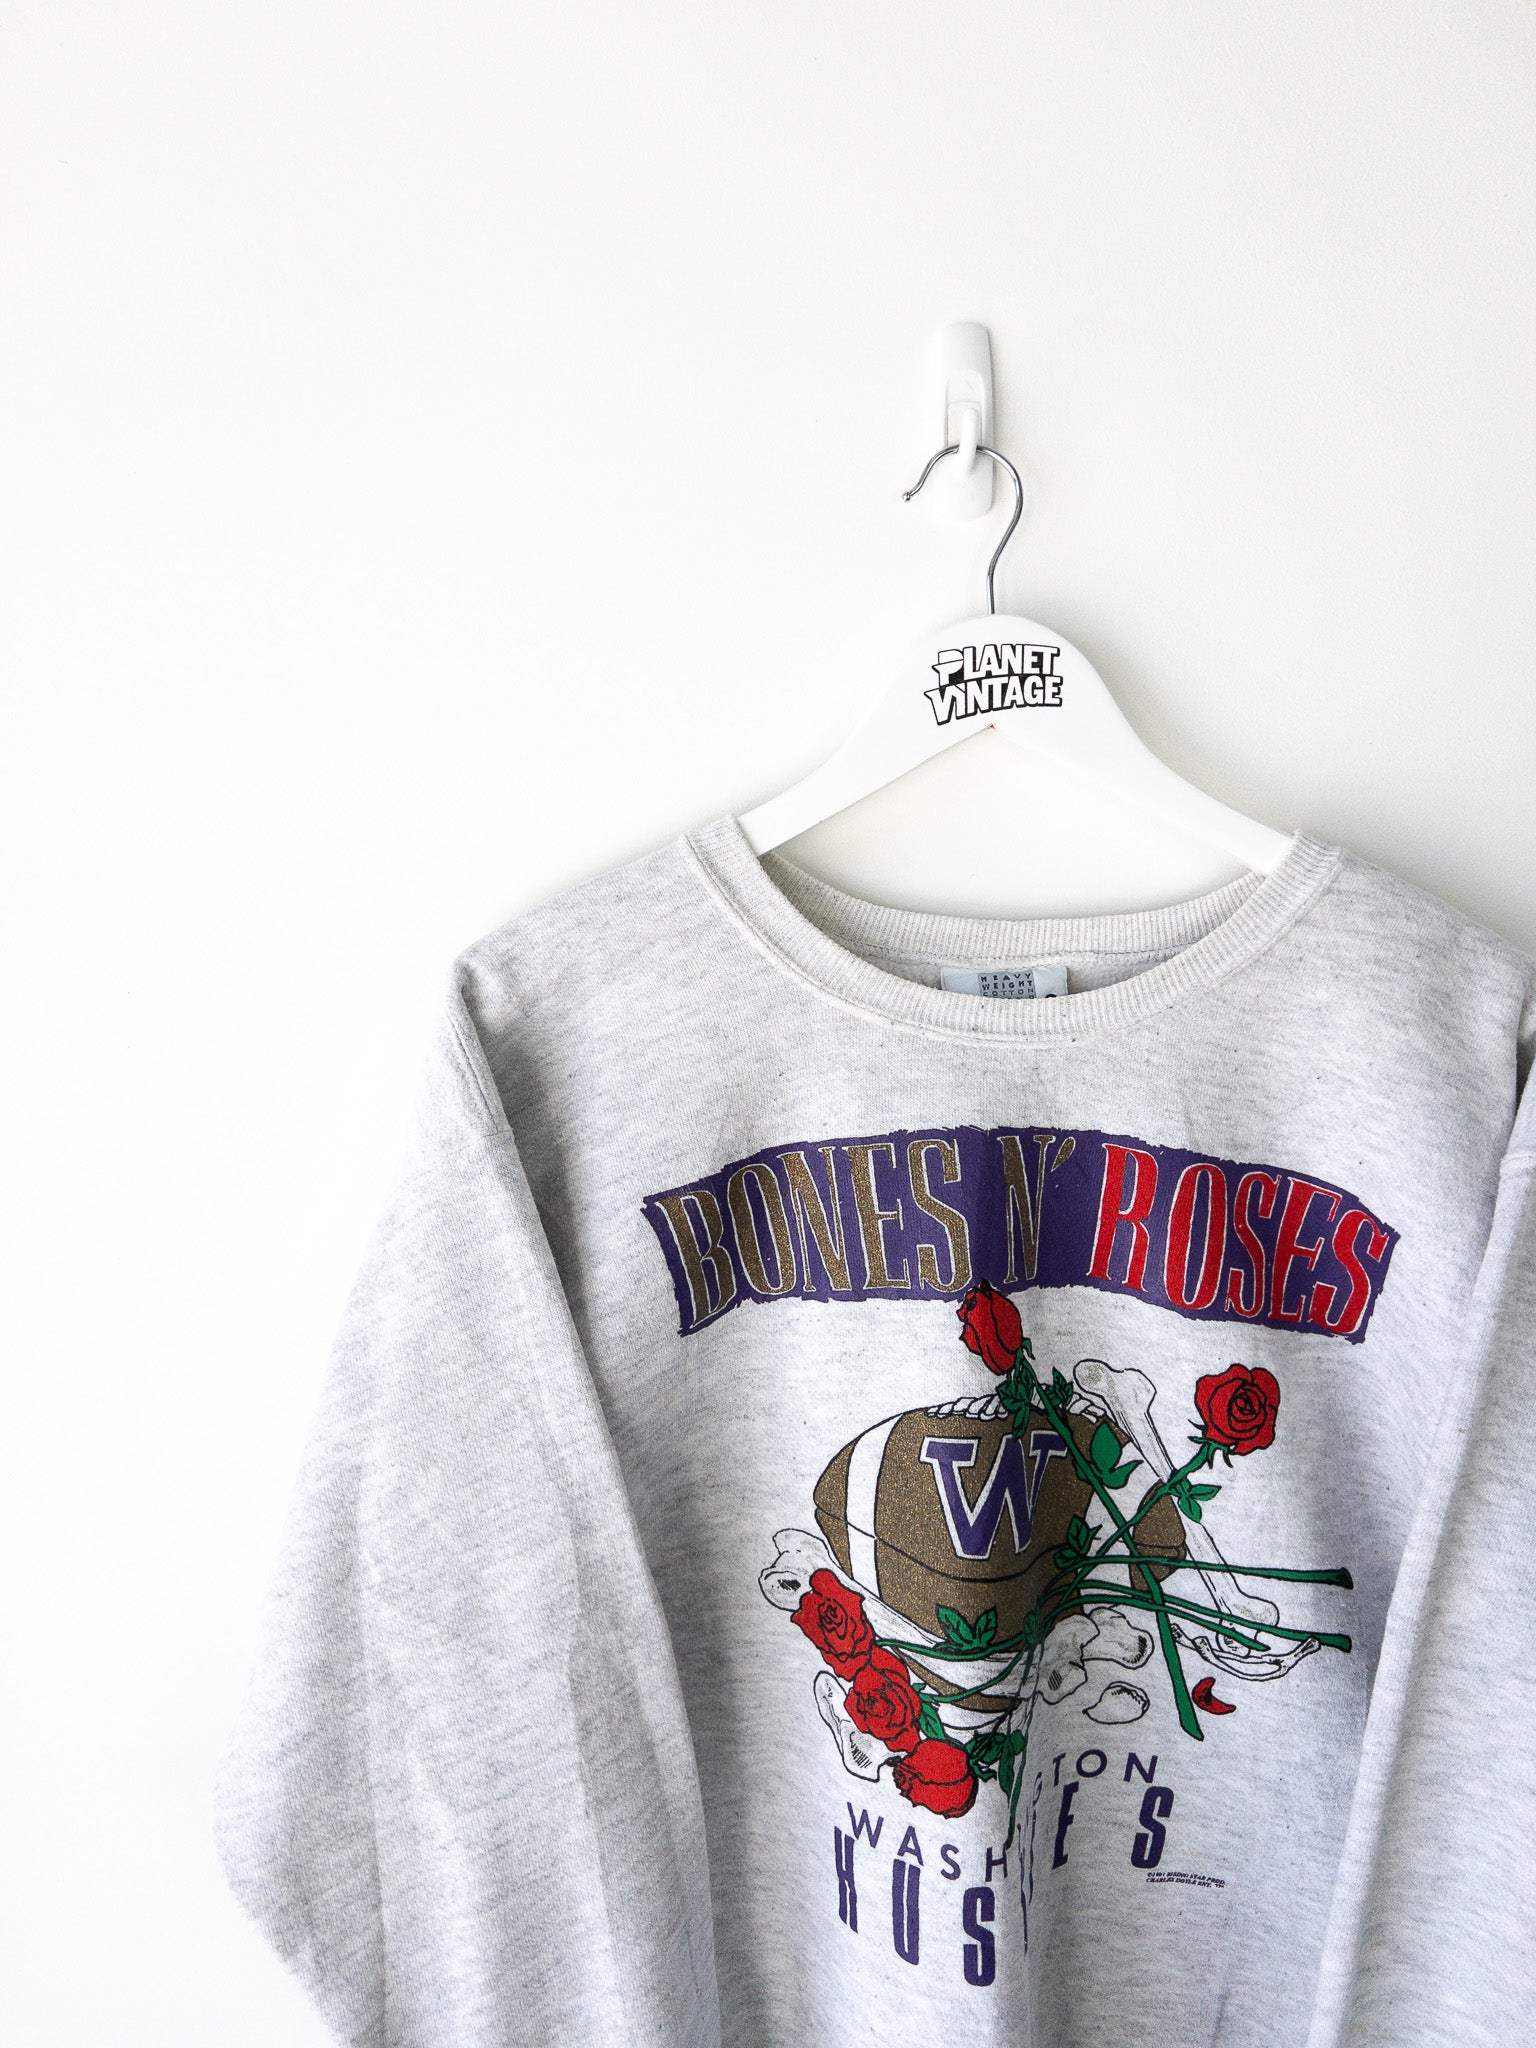 Vintage Washington Huskies 1991 Sweatshirt (L)